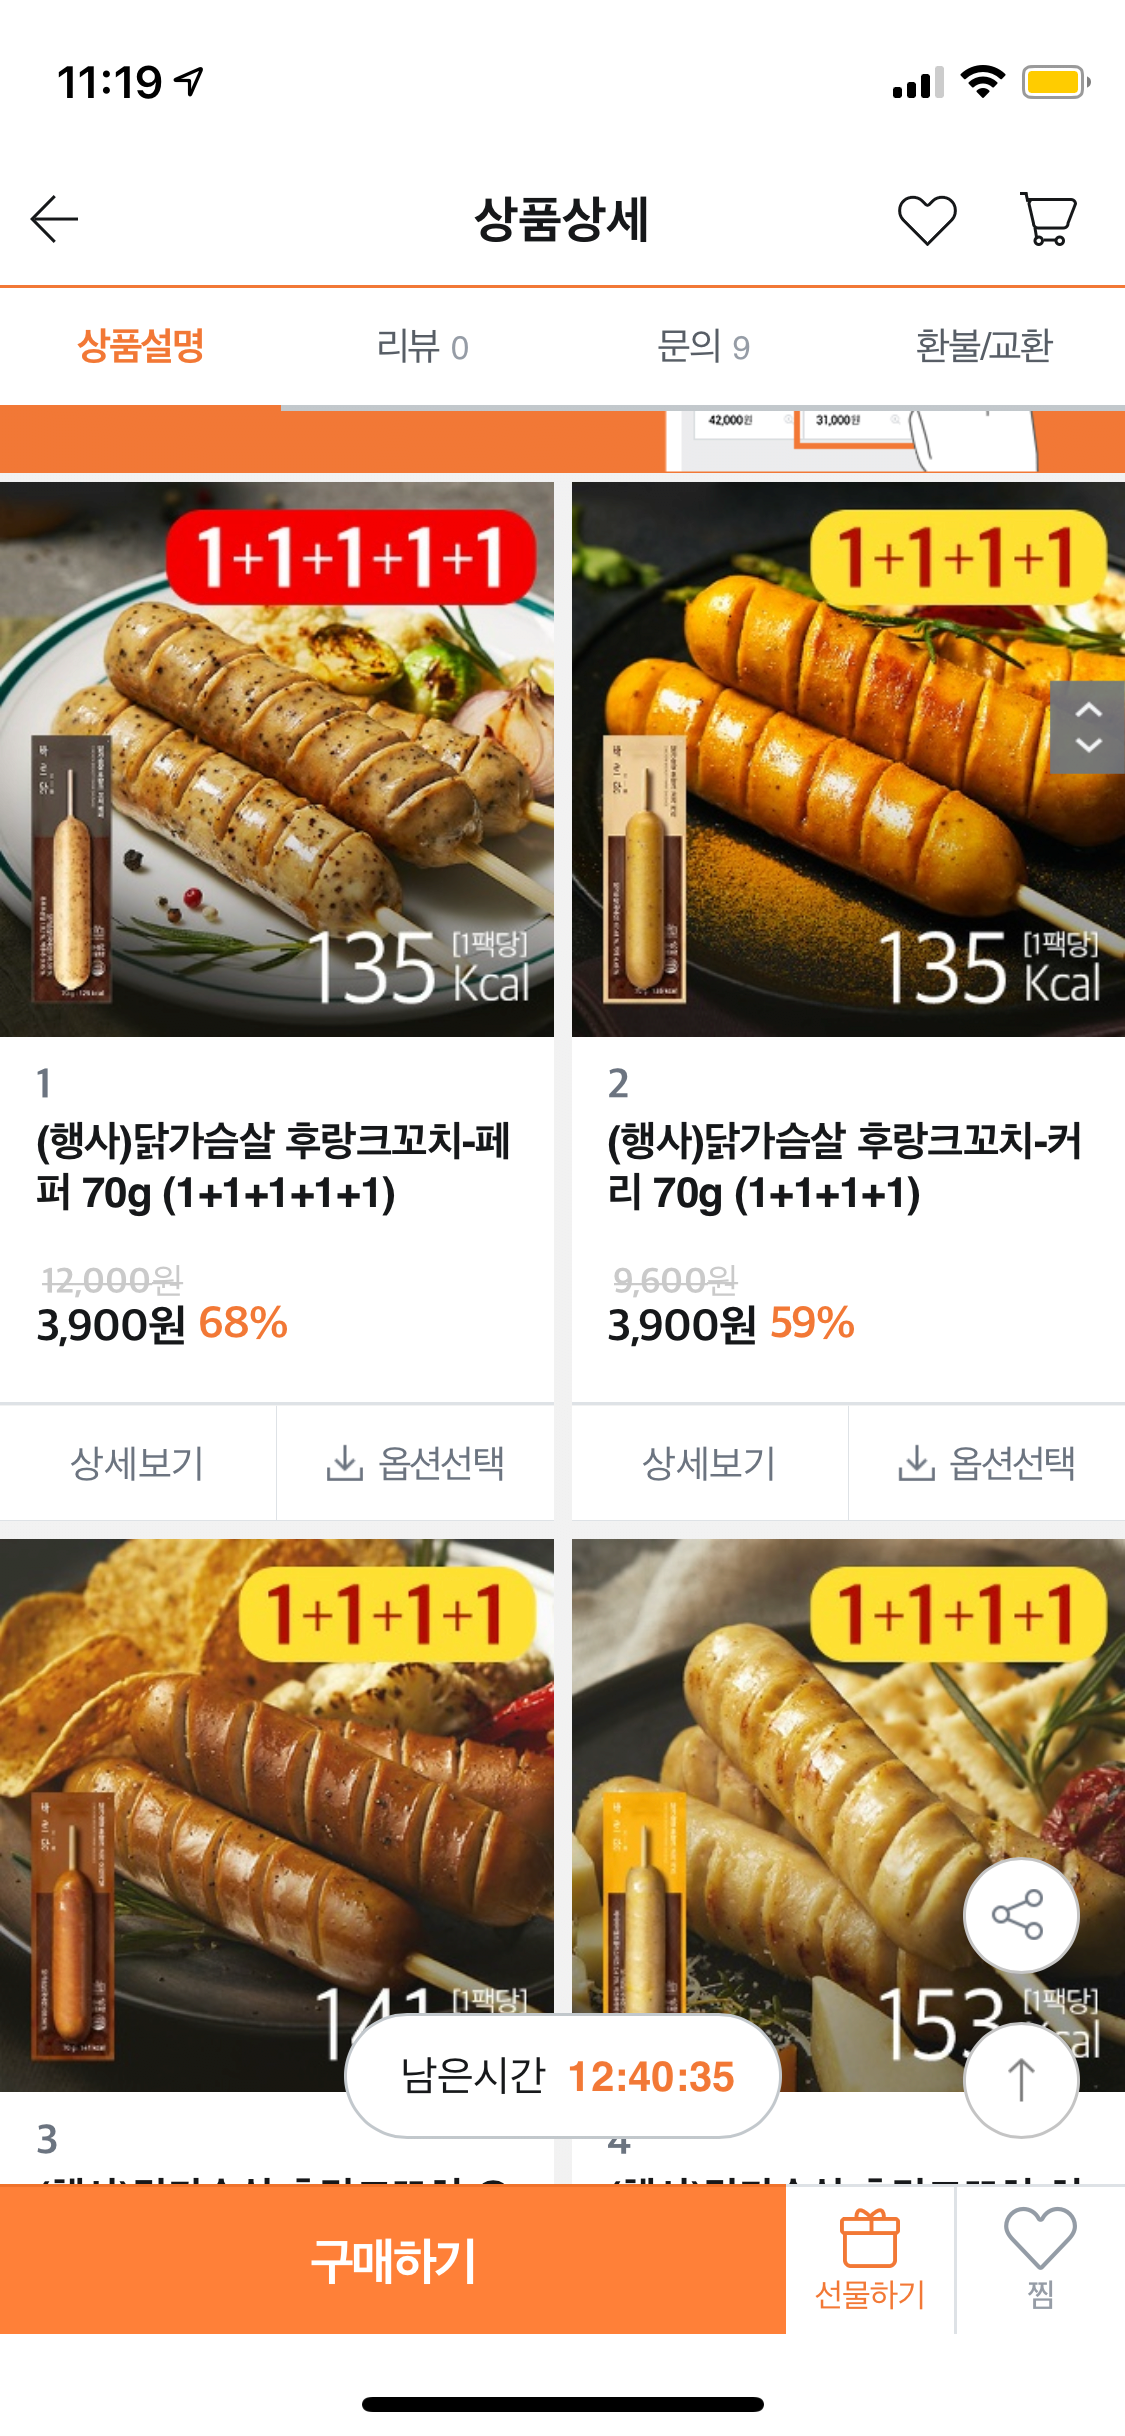 [티몬] 바르닭 1+1+1+1+1 (3,900원) (무료)